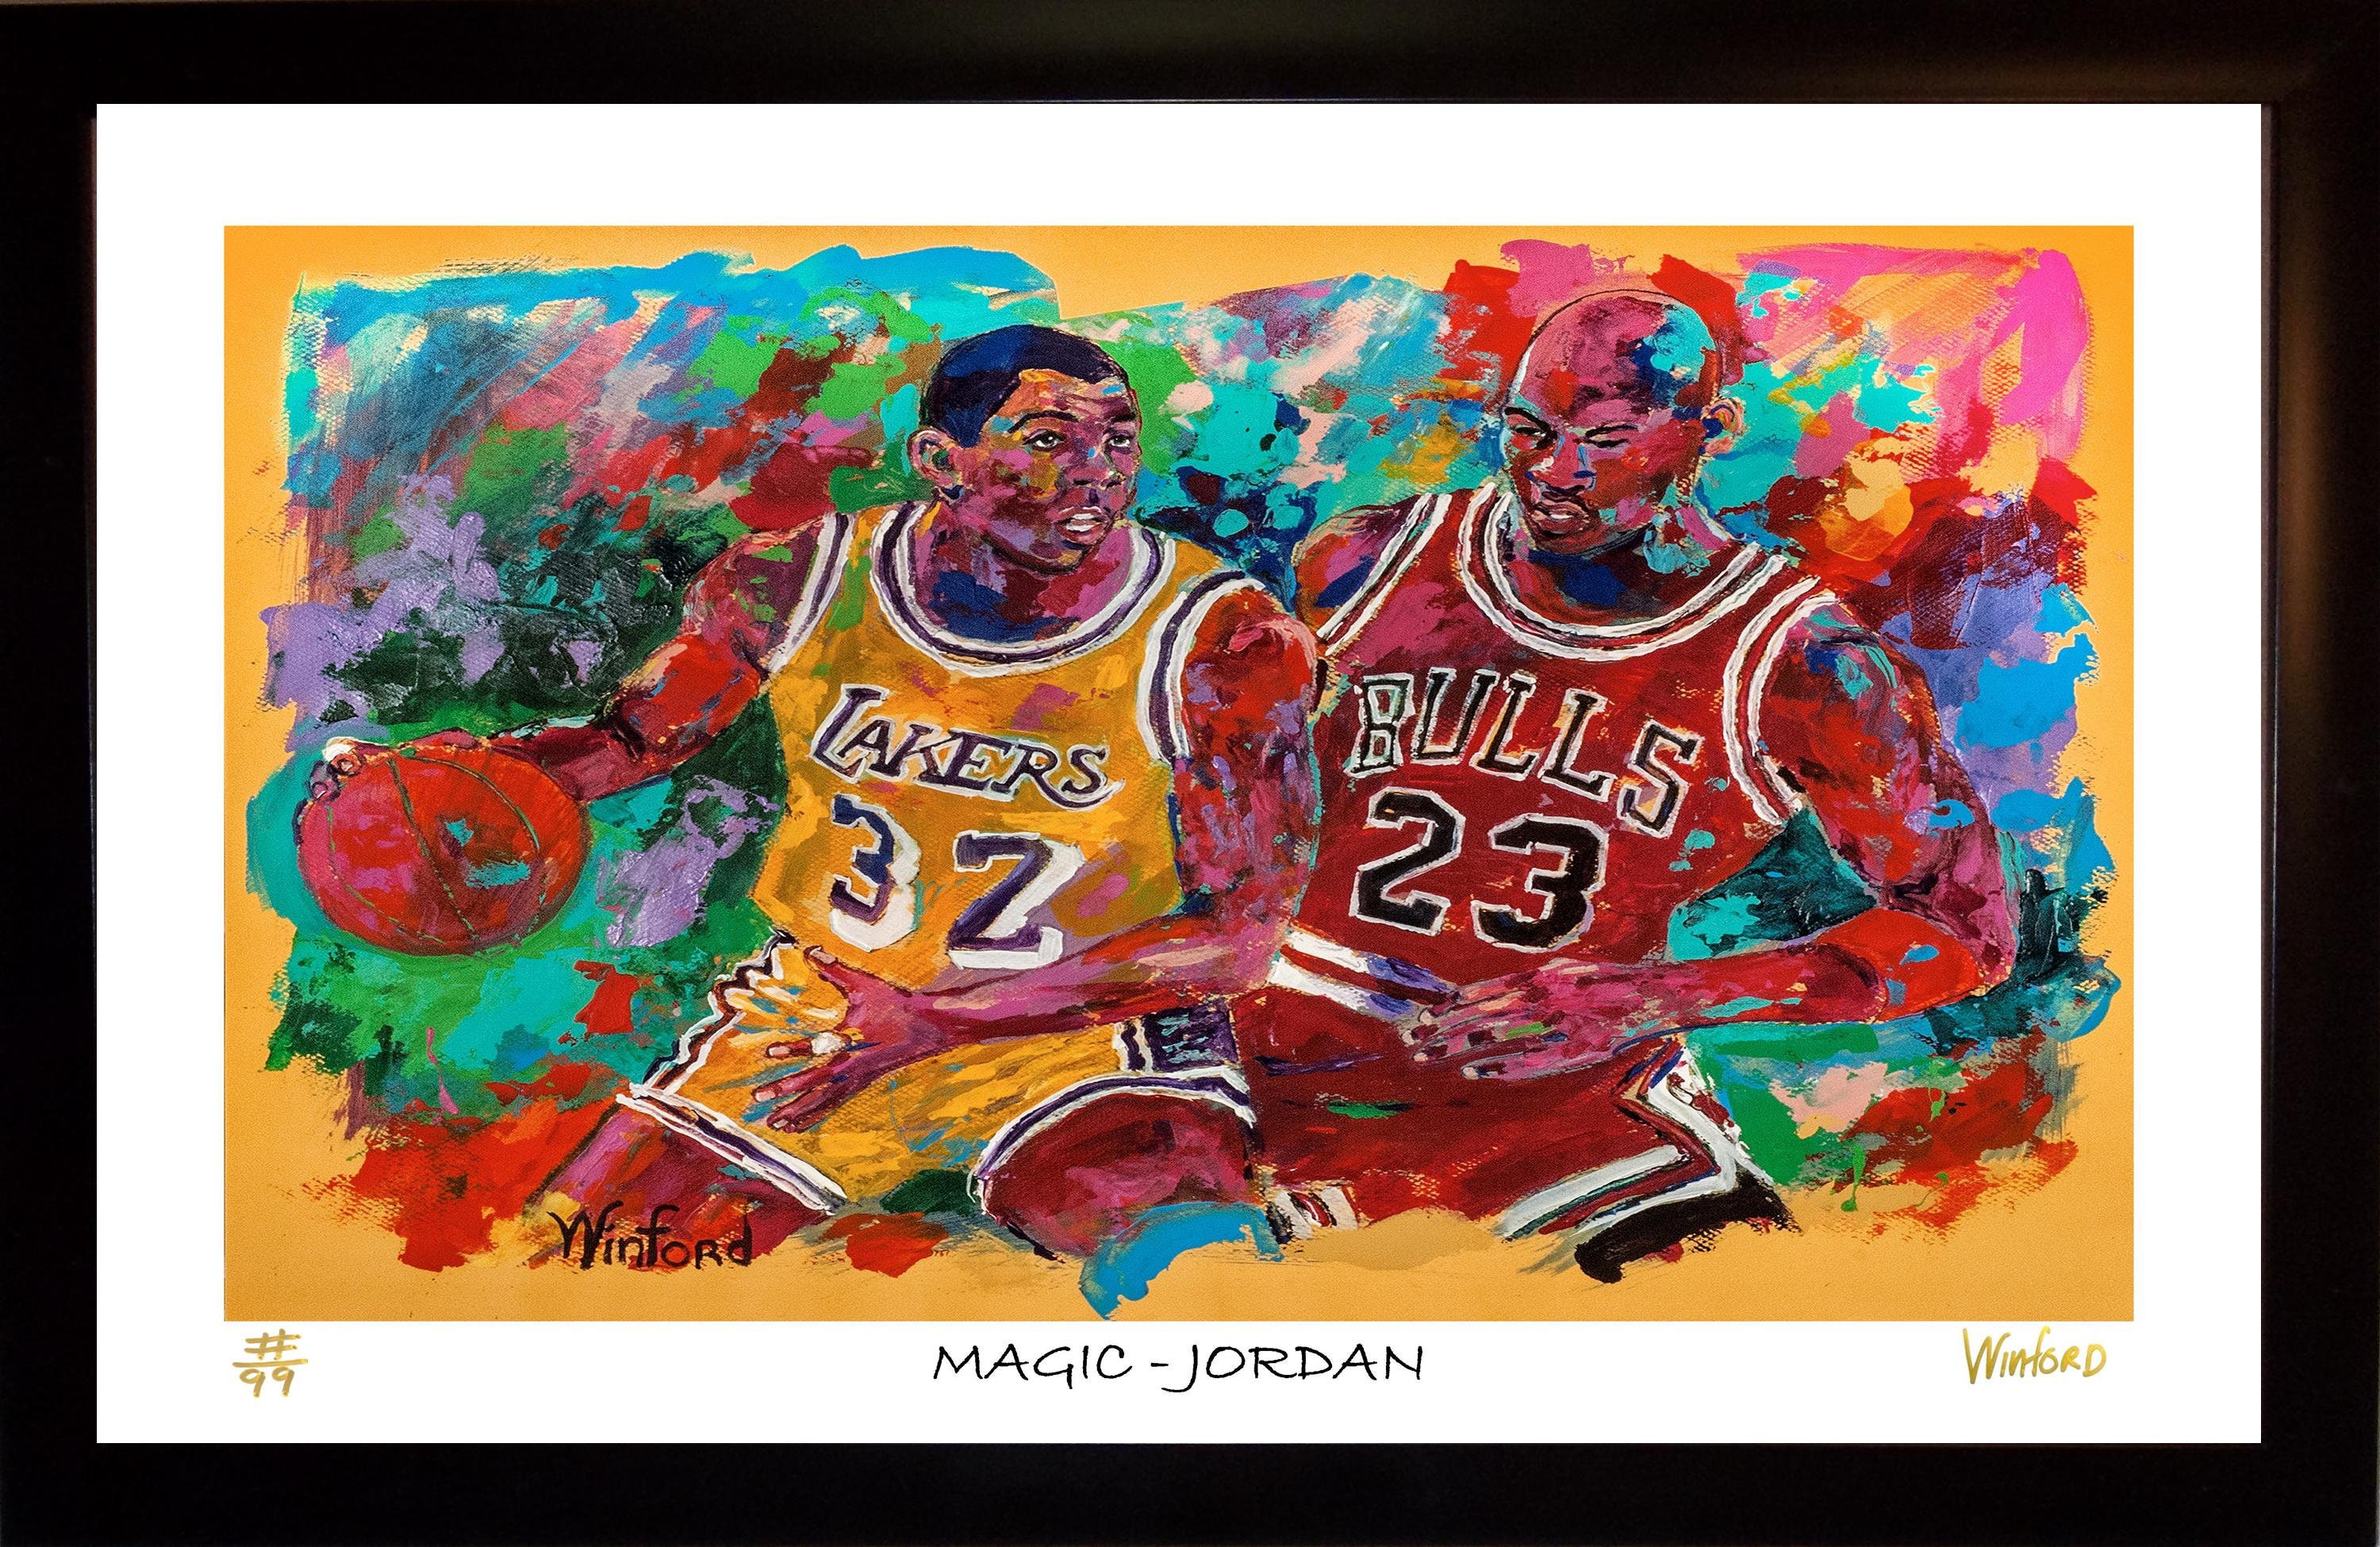 Michael Jordan & Magic Johnson Signed Artwork Print - Memorabilia